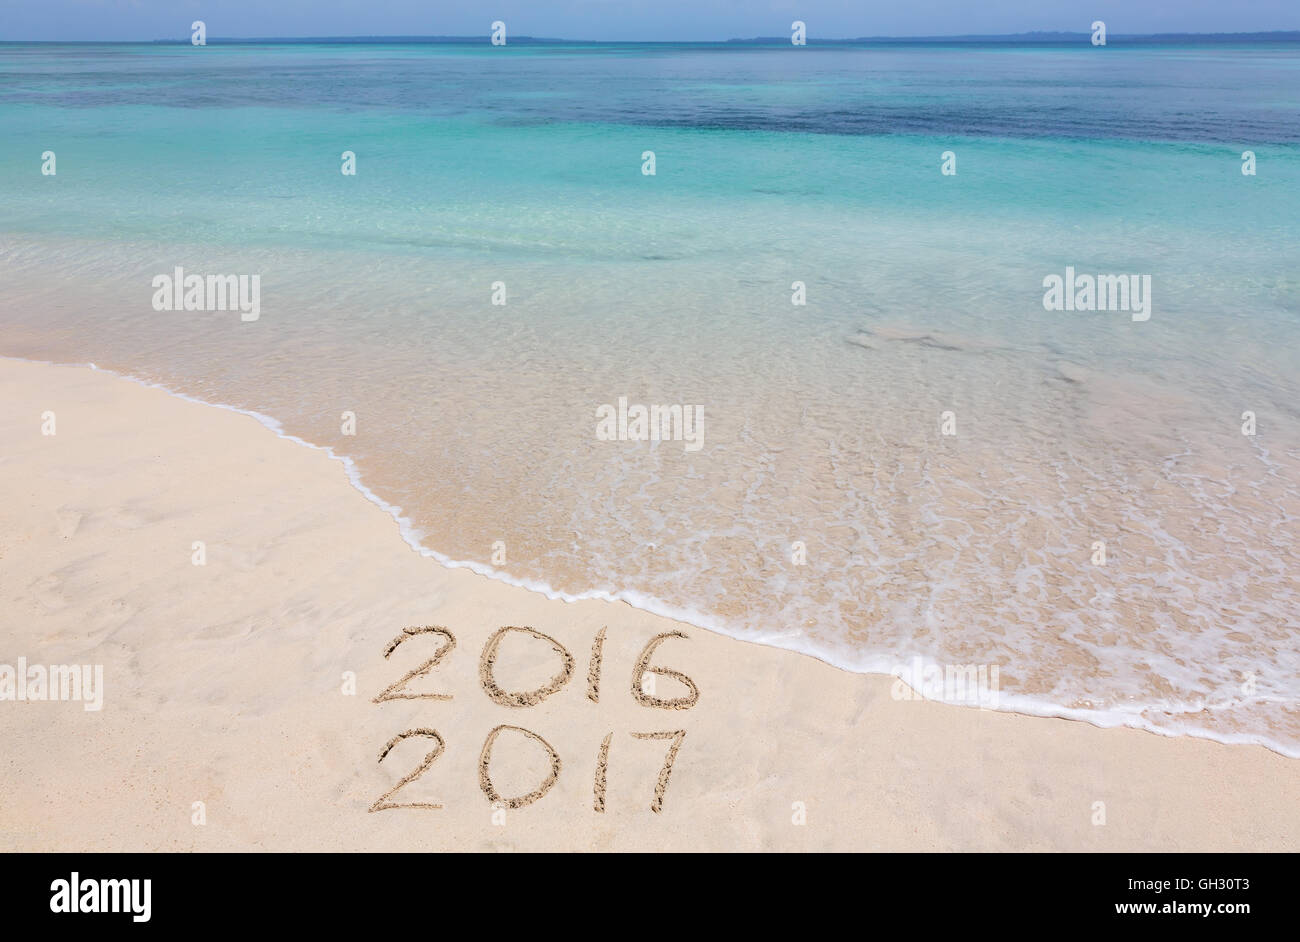 Jahre 2016 und 2017 werden am Sandstrand eingeschrieben. Stockfoto